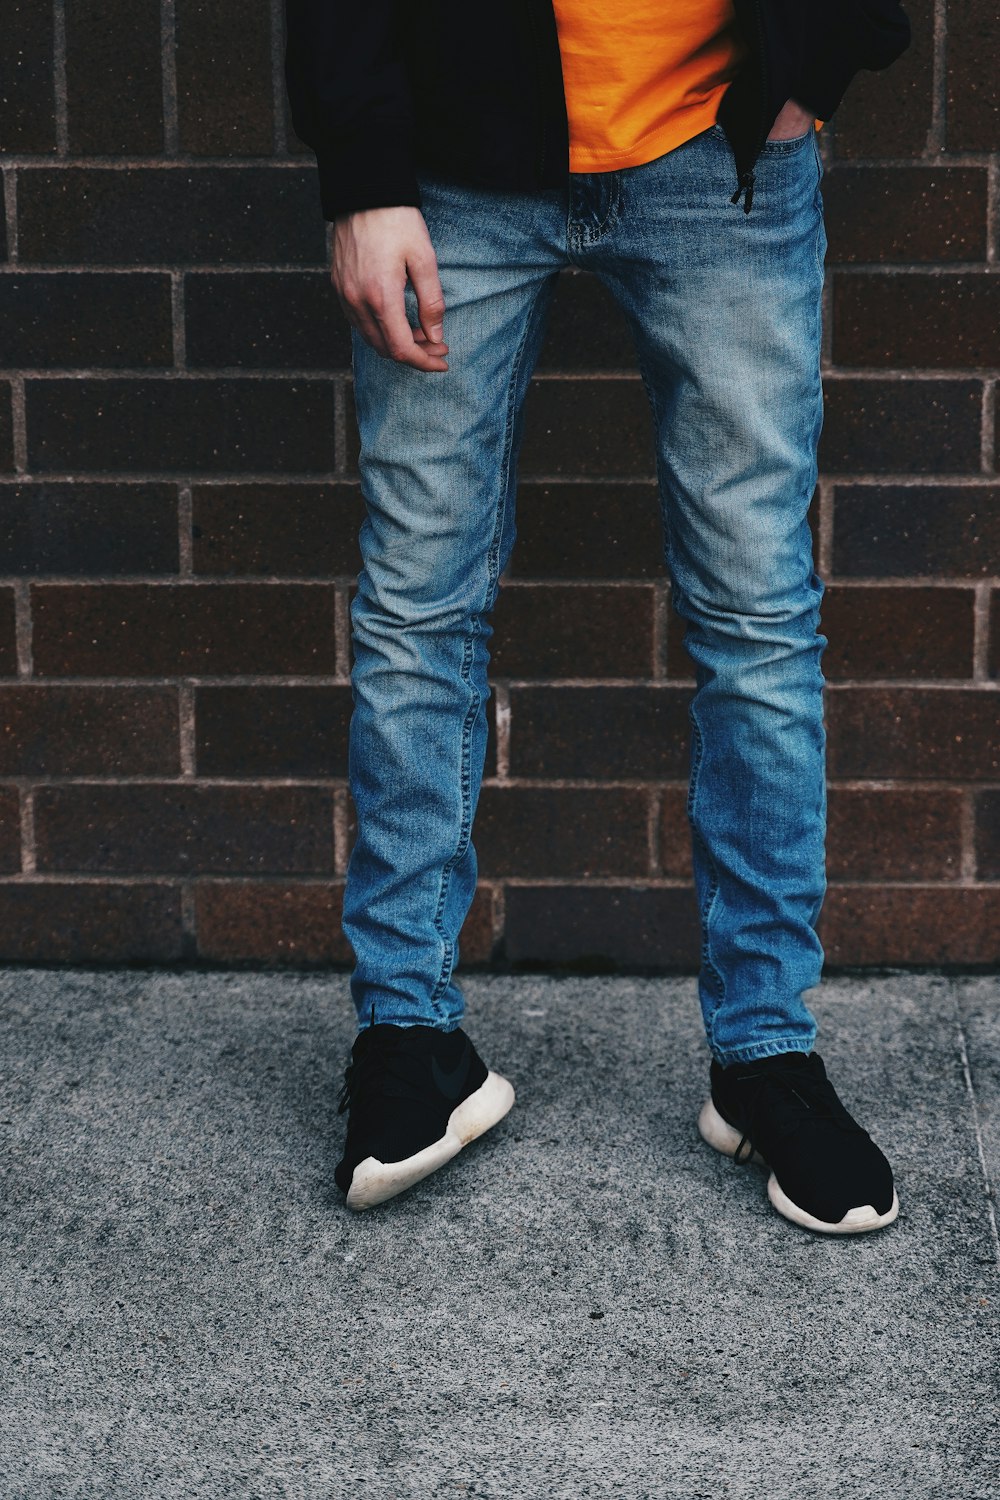 homem em jeans azul em pé